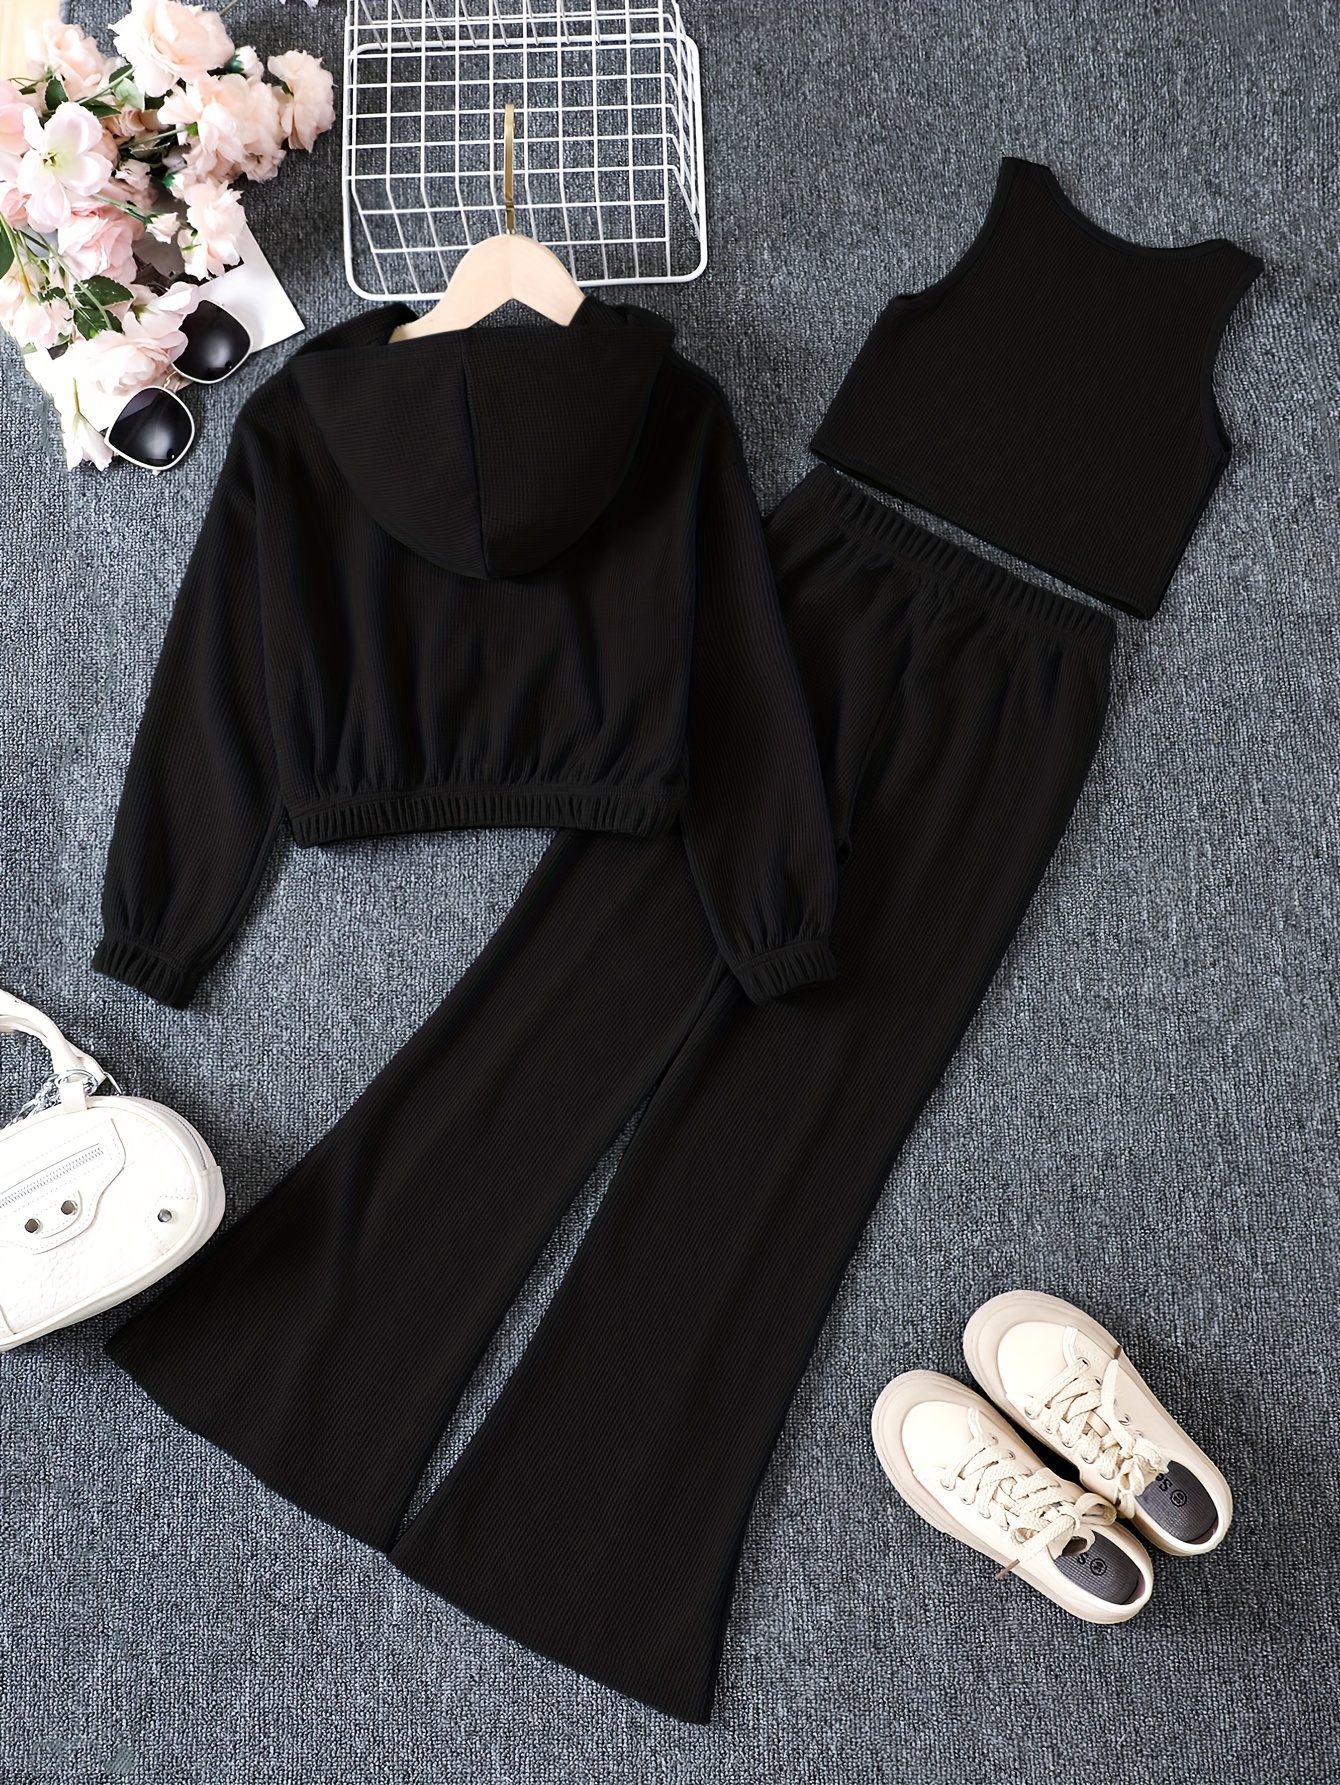 Women's Sport Outfit: mélange tank top + black Capri trousers